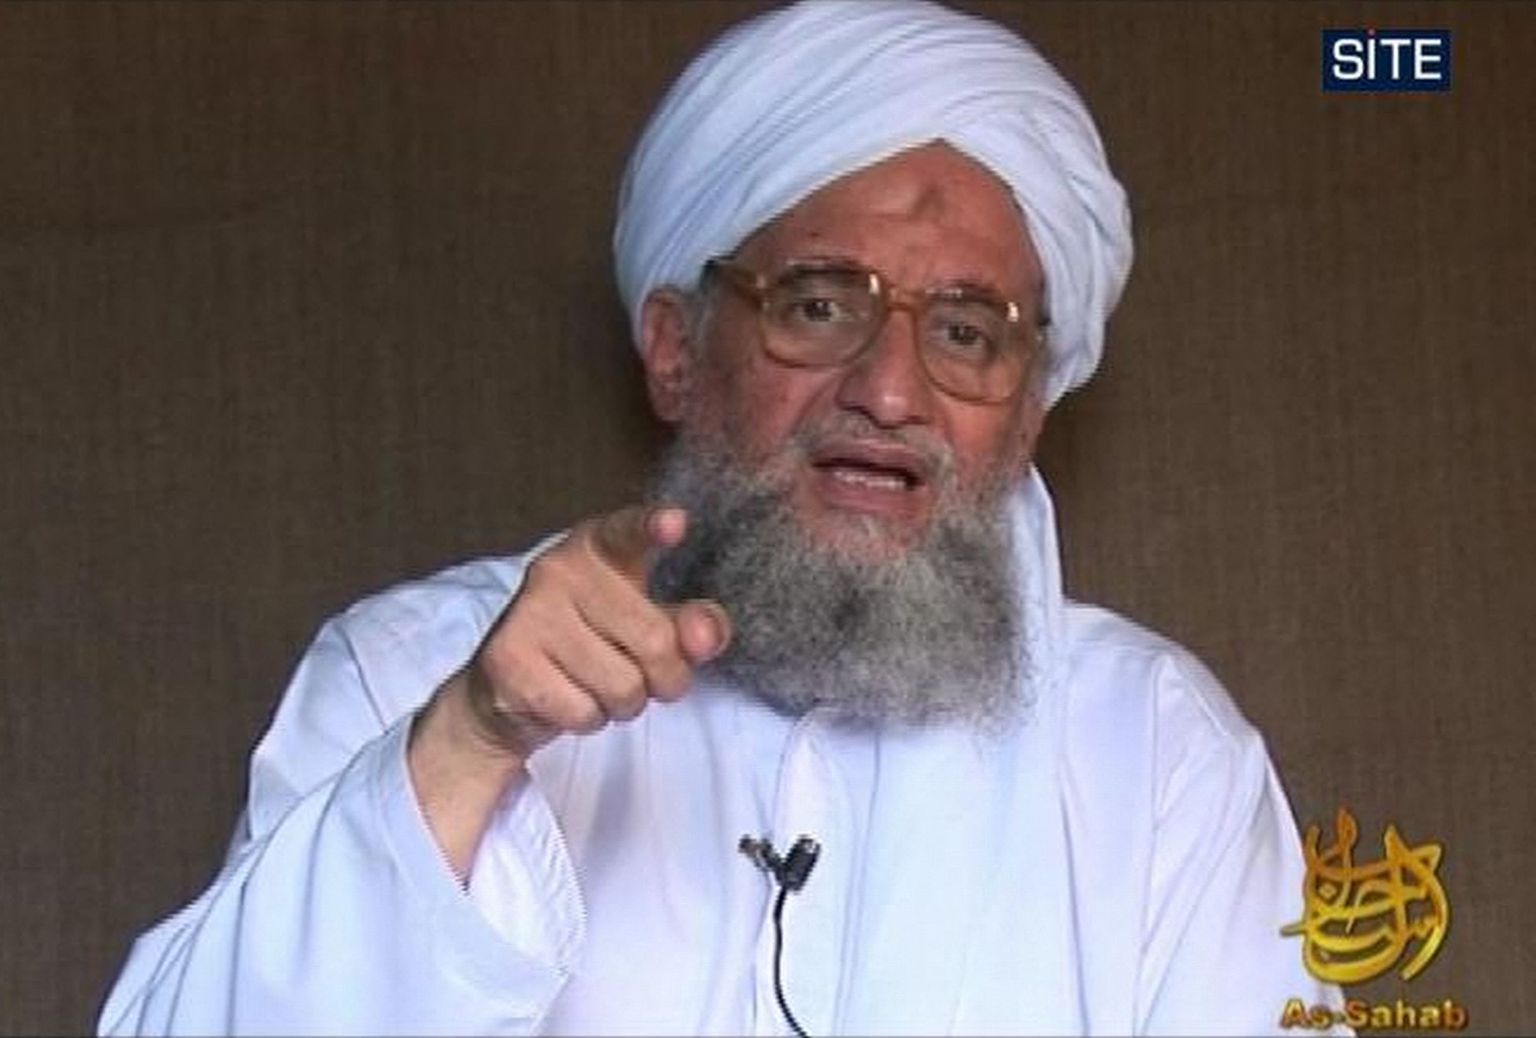 USA valitsusvälise organisatsiooni SITE Intelligence Groupi 4. oktoobril 2009 avaldatud foto al-Qaeda teisest mehest Ayman al-Zawahirist. Temast sai al-Qaeda juht pärast Osma bin Ladeni tapmist ameeriklaste poolt 2. mail 2011 Pakistanis Abbottabadis